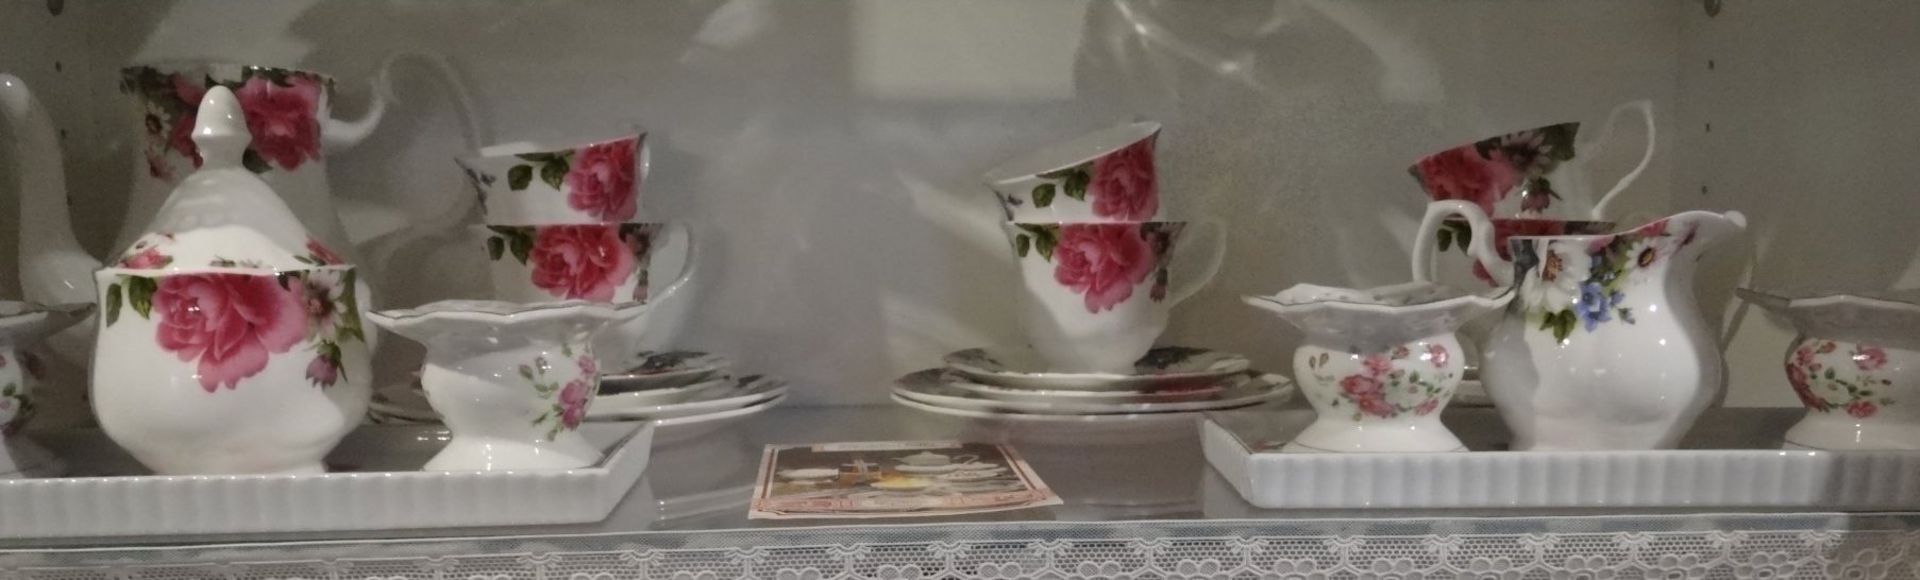 Kaffeeservice für 6 Personen, Victorian Style,mit Rosendekor, Kaffeekern, 6 kompl. Gedecke, 2